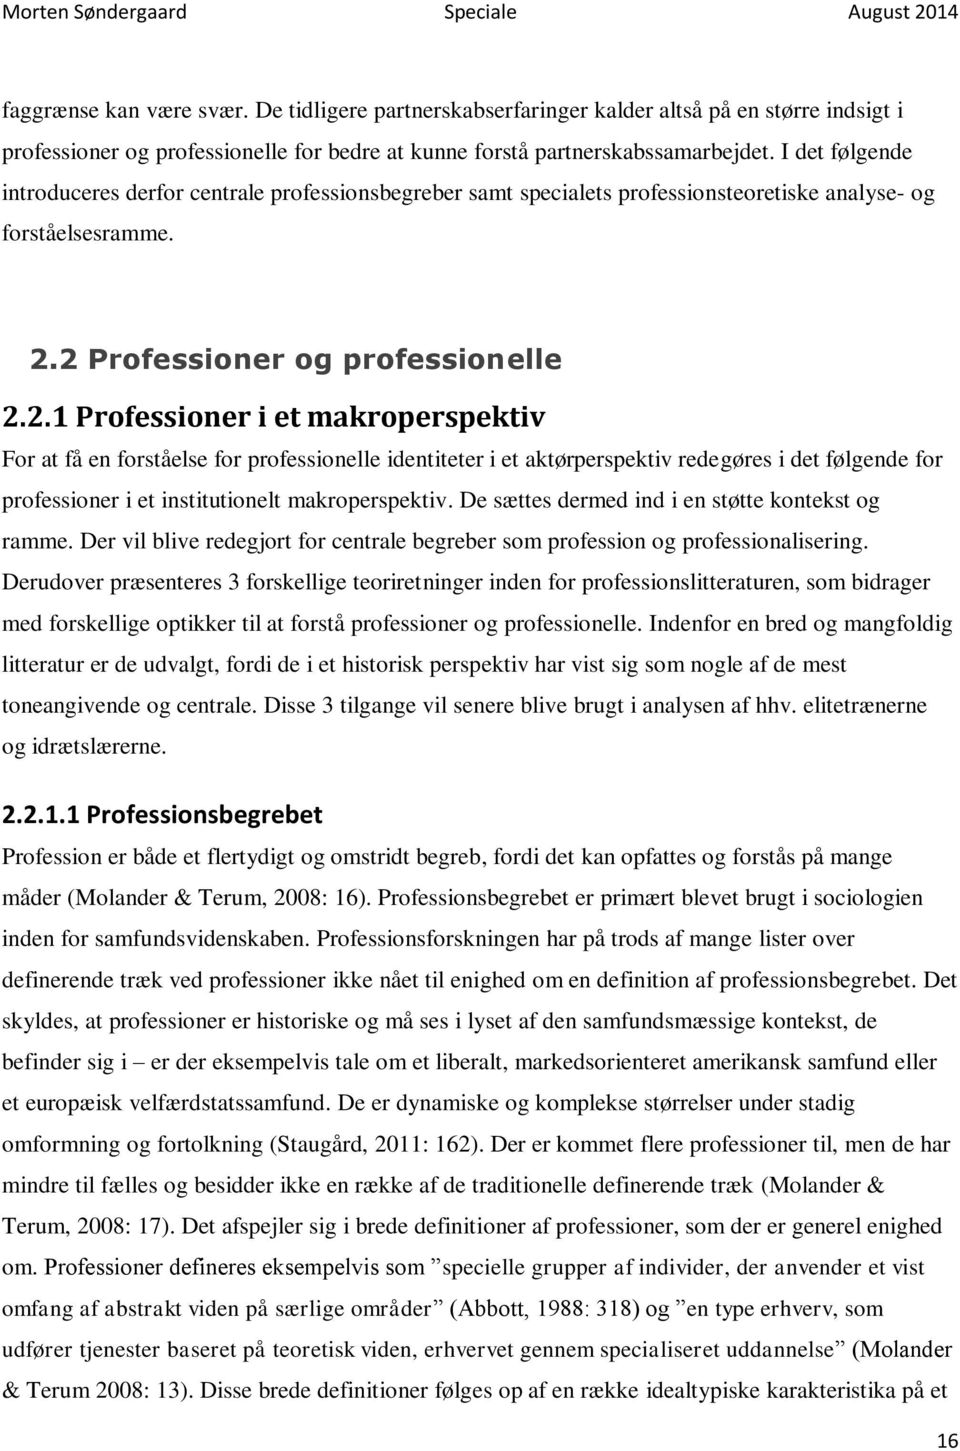 2 Professioner og professionelle 2.2.1 Professioner i et makroperspektiv For at få en forståelse for professionelle identiteter i et aktørperspektiv redegøres i det følgende for professioner i et institutionelt makroperspektiv.